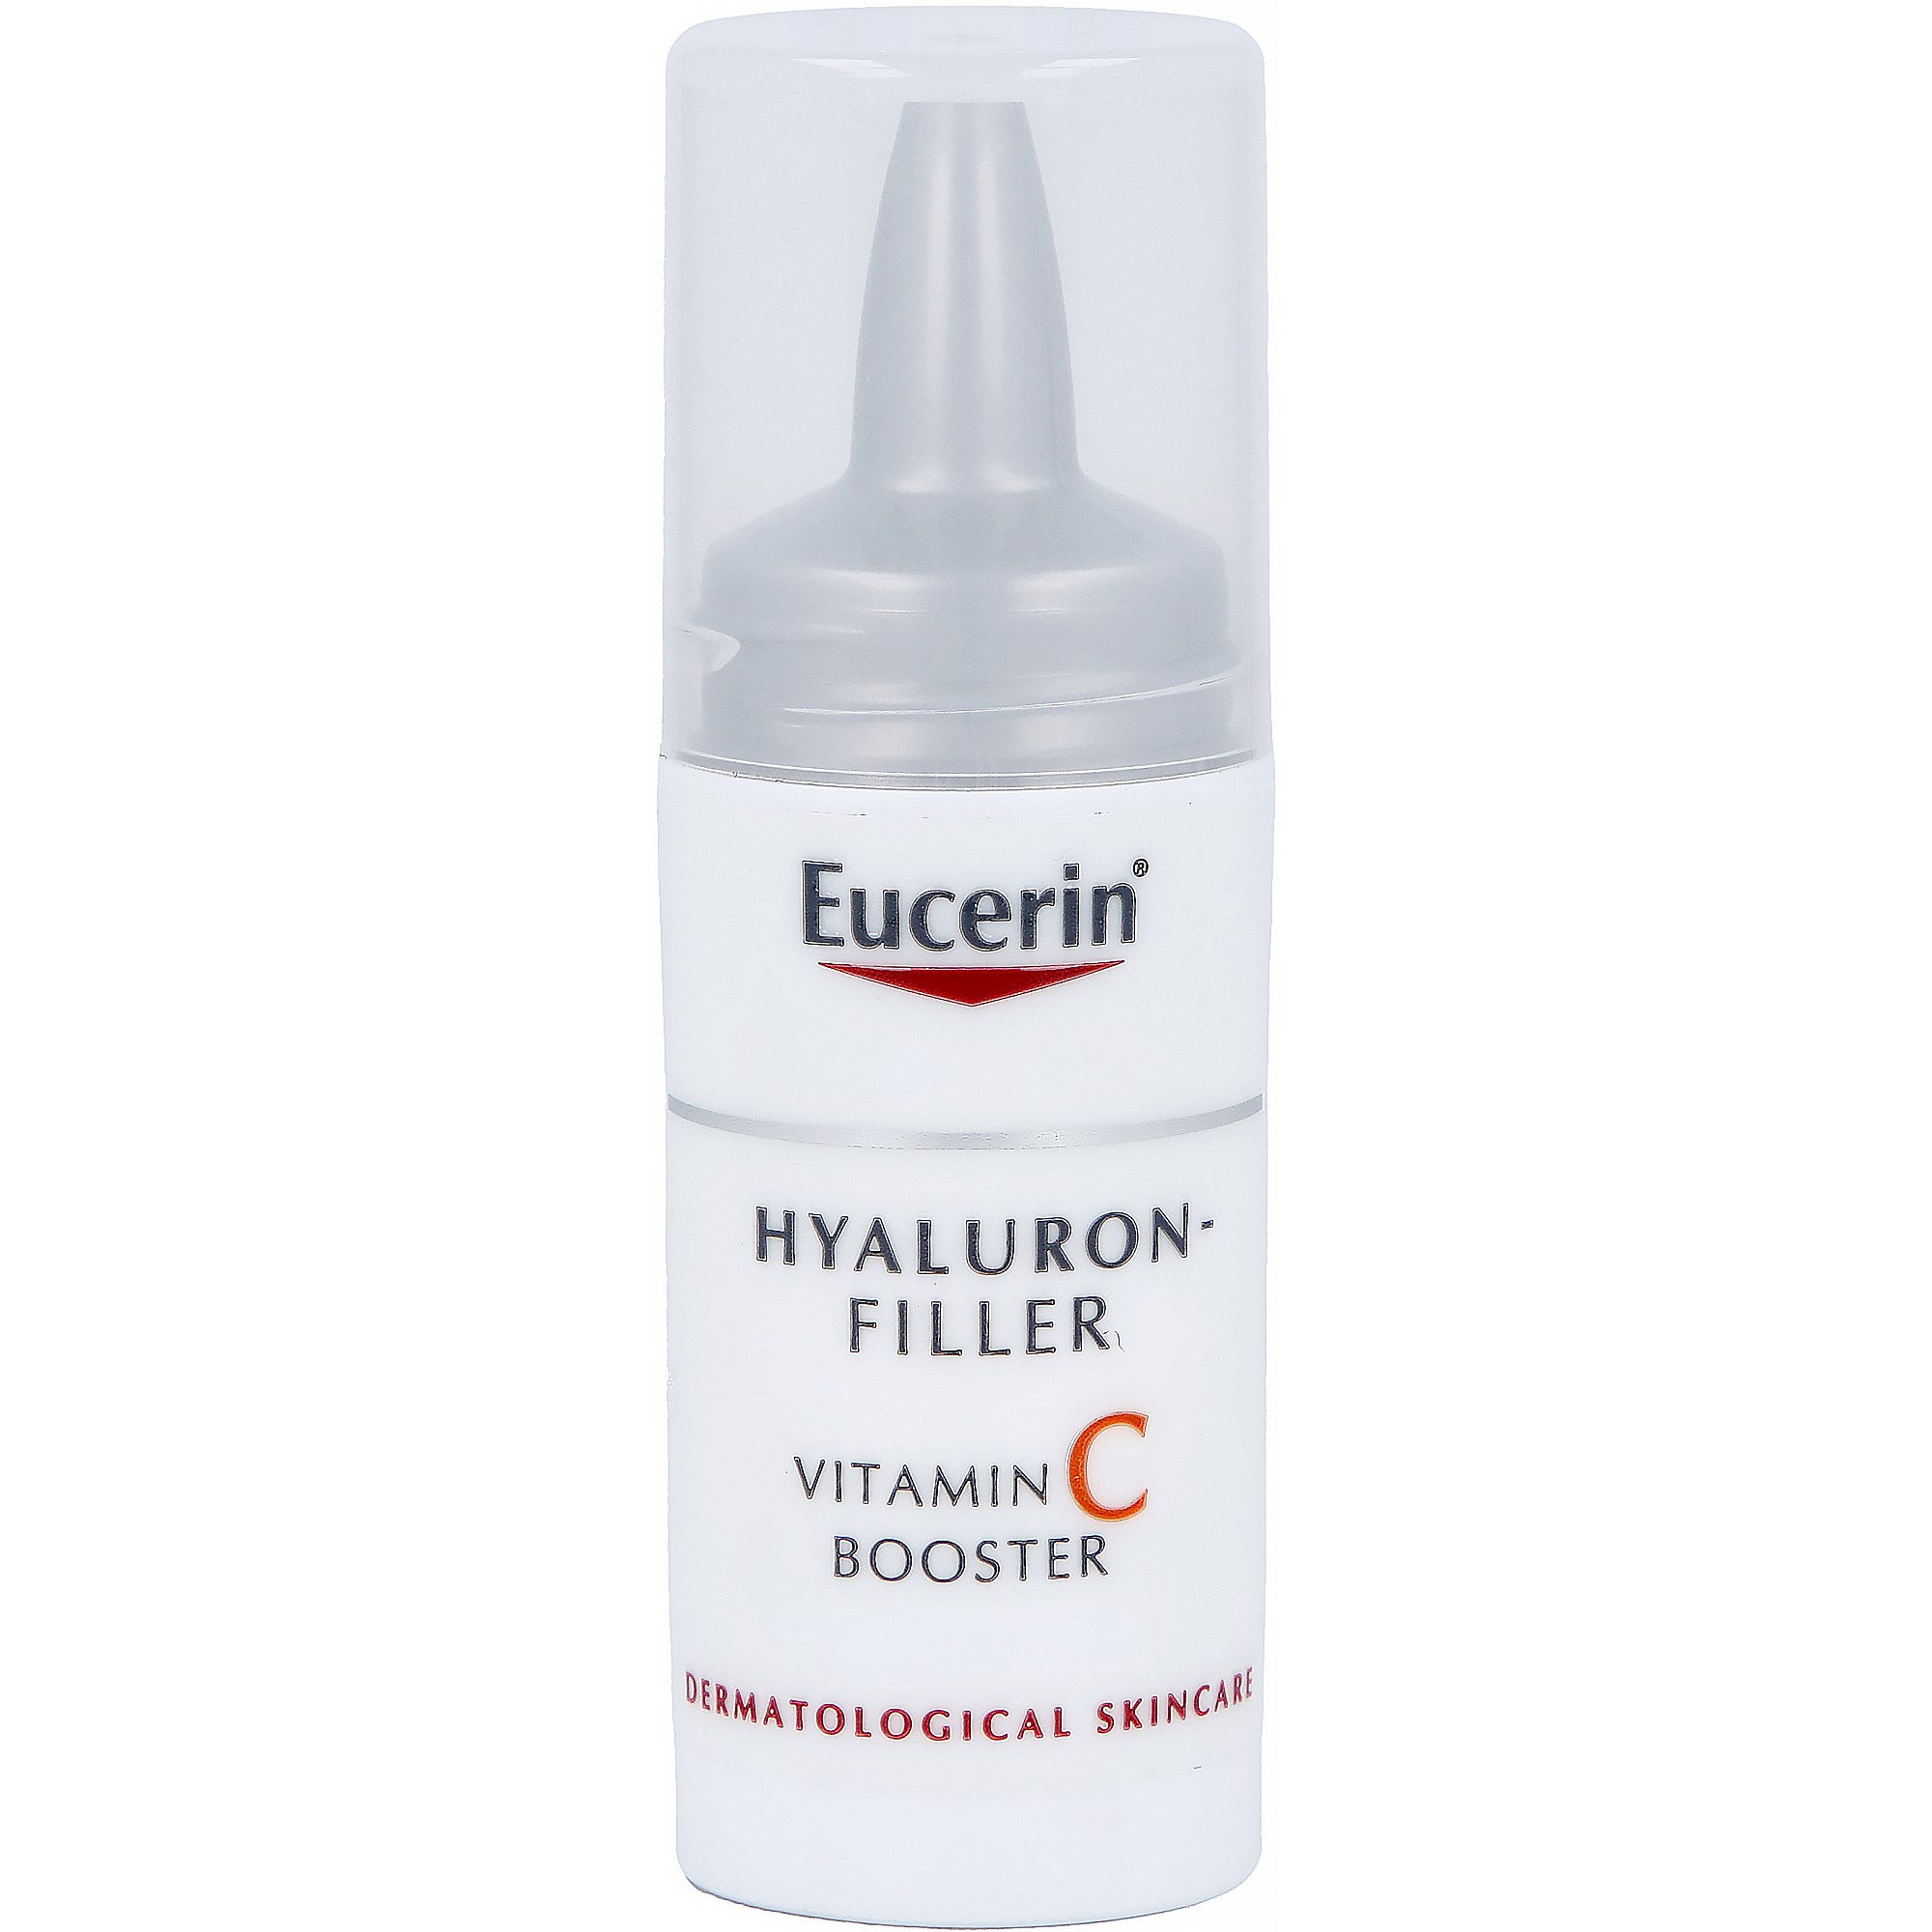 Bilde av Eucerin Hyaluron-filler Vitamin C Booster 8 Ml